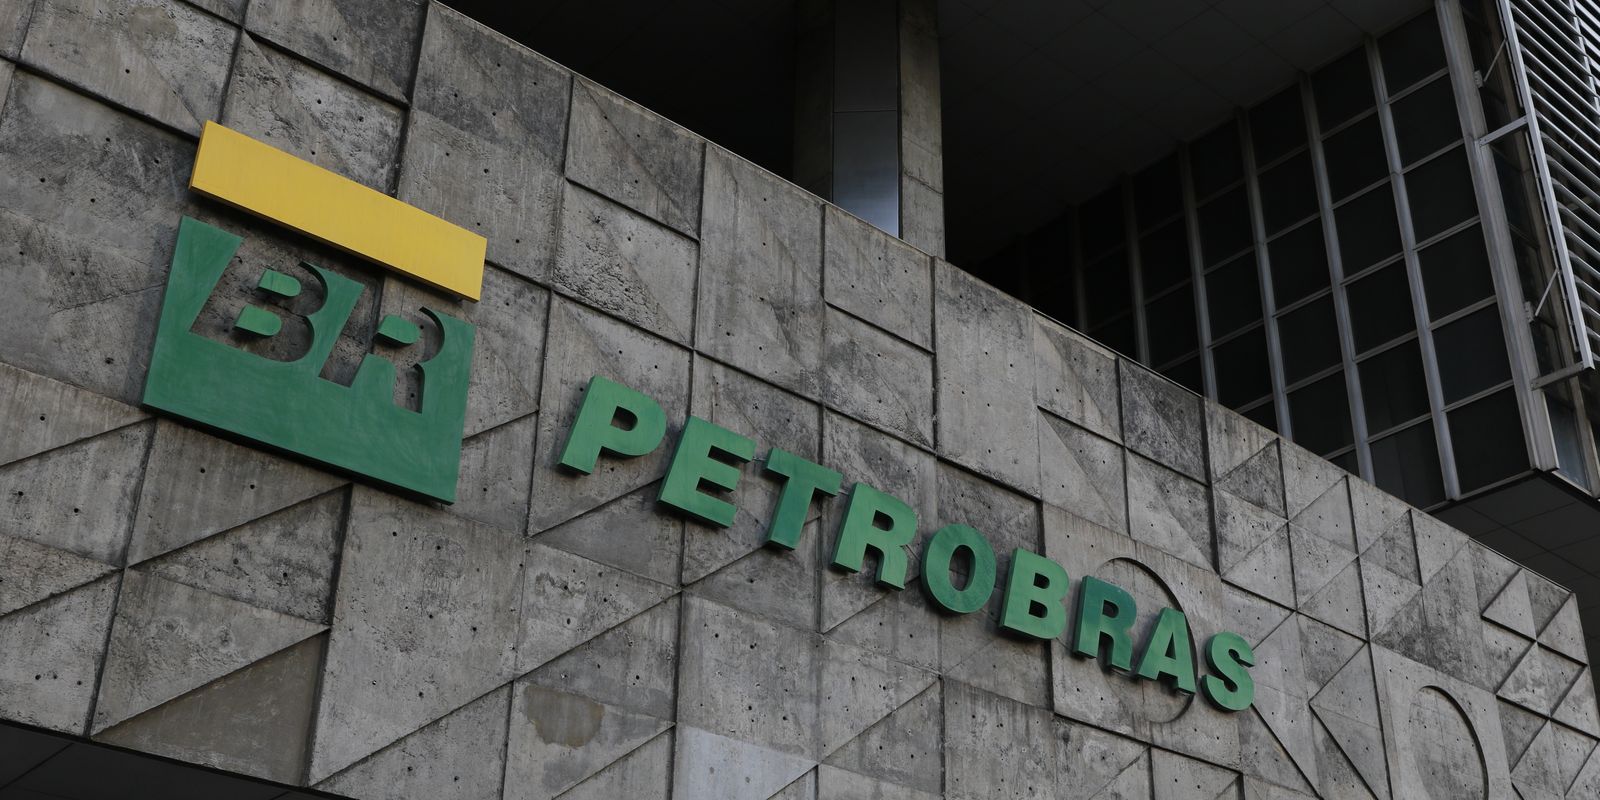 Petrobras aprova propostas para planejamento estratégico